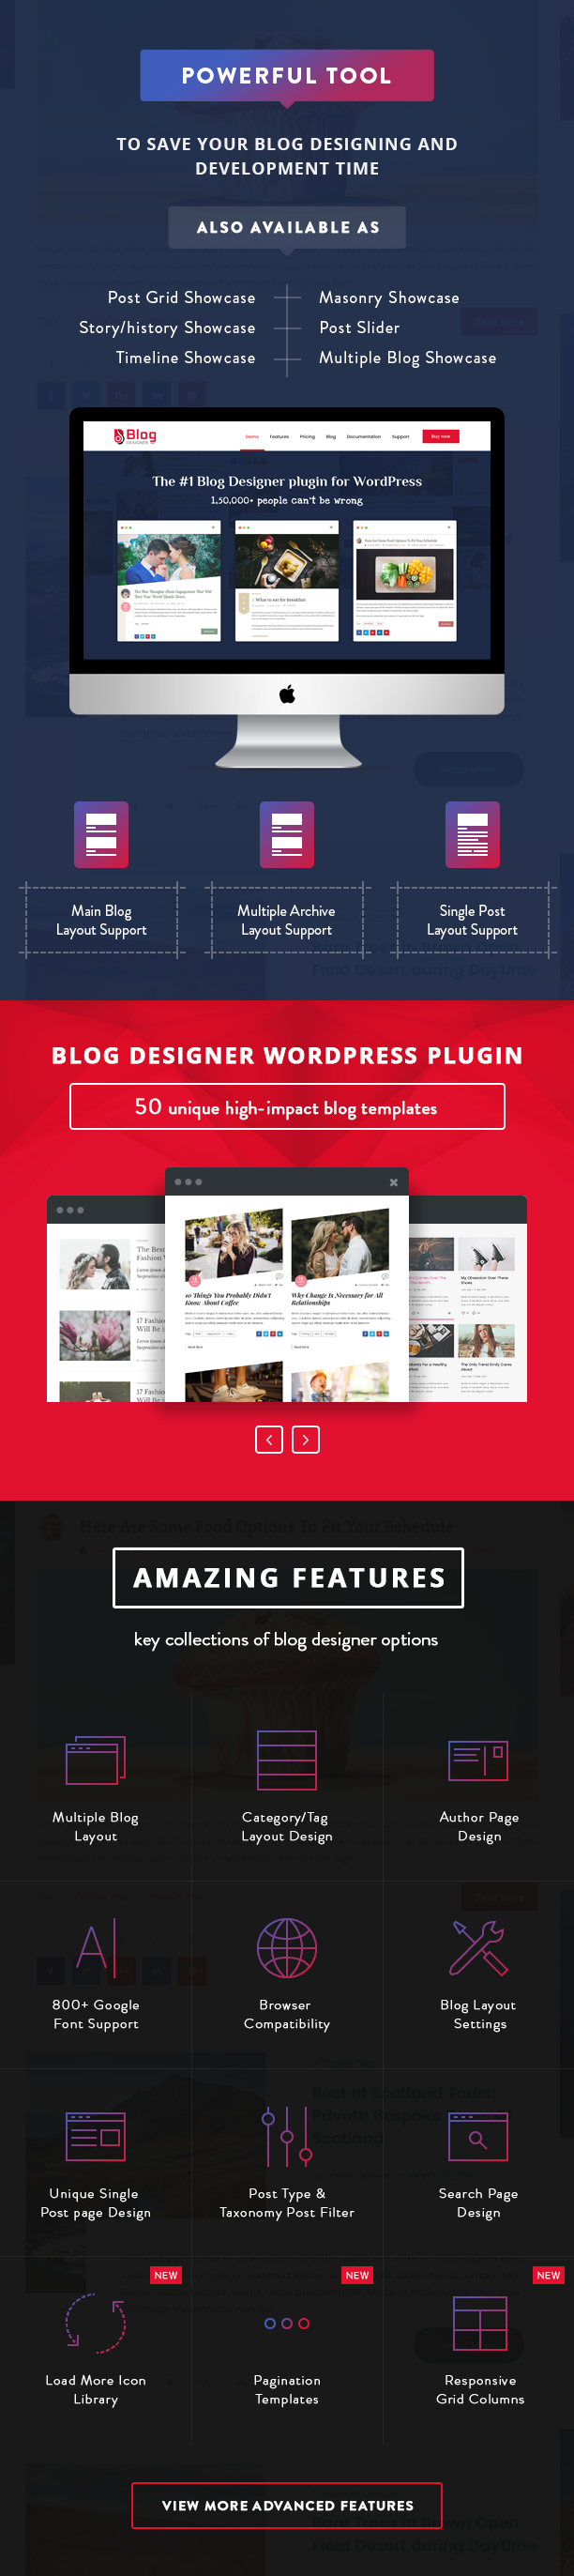 Blog Designer PRO Features